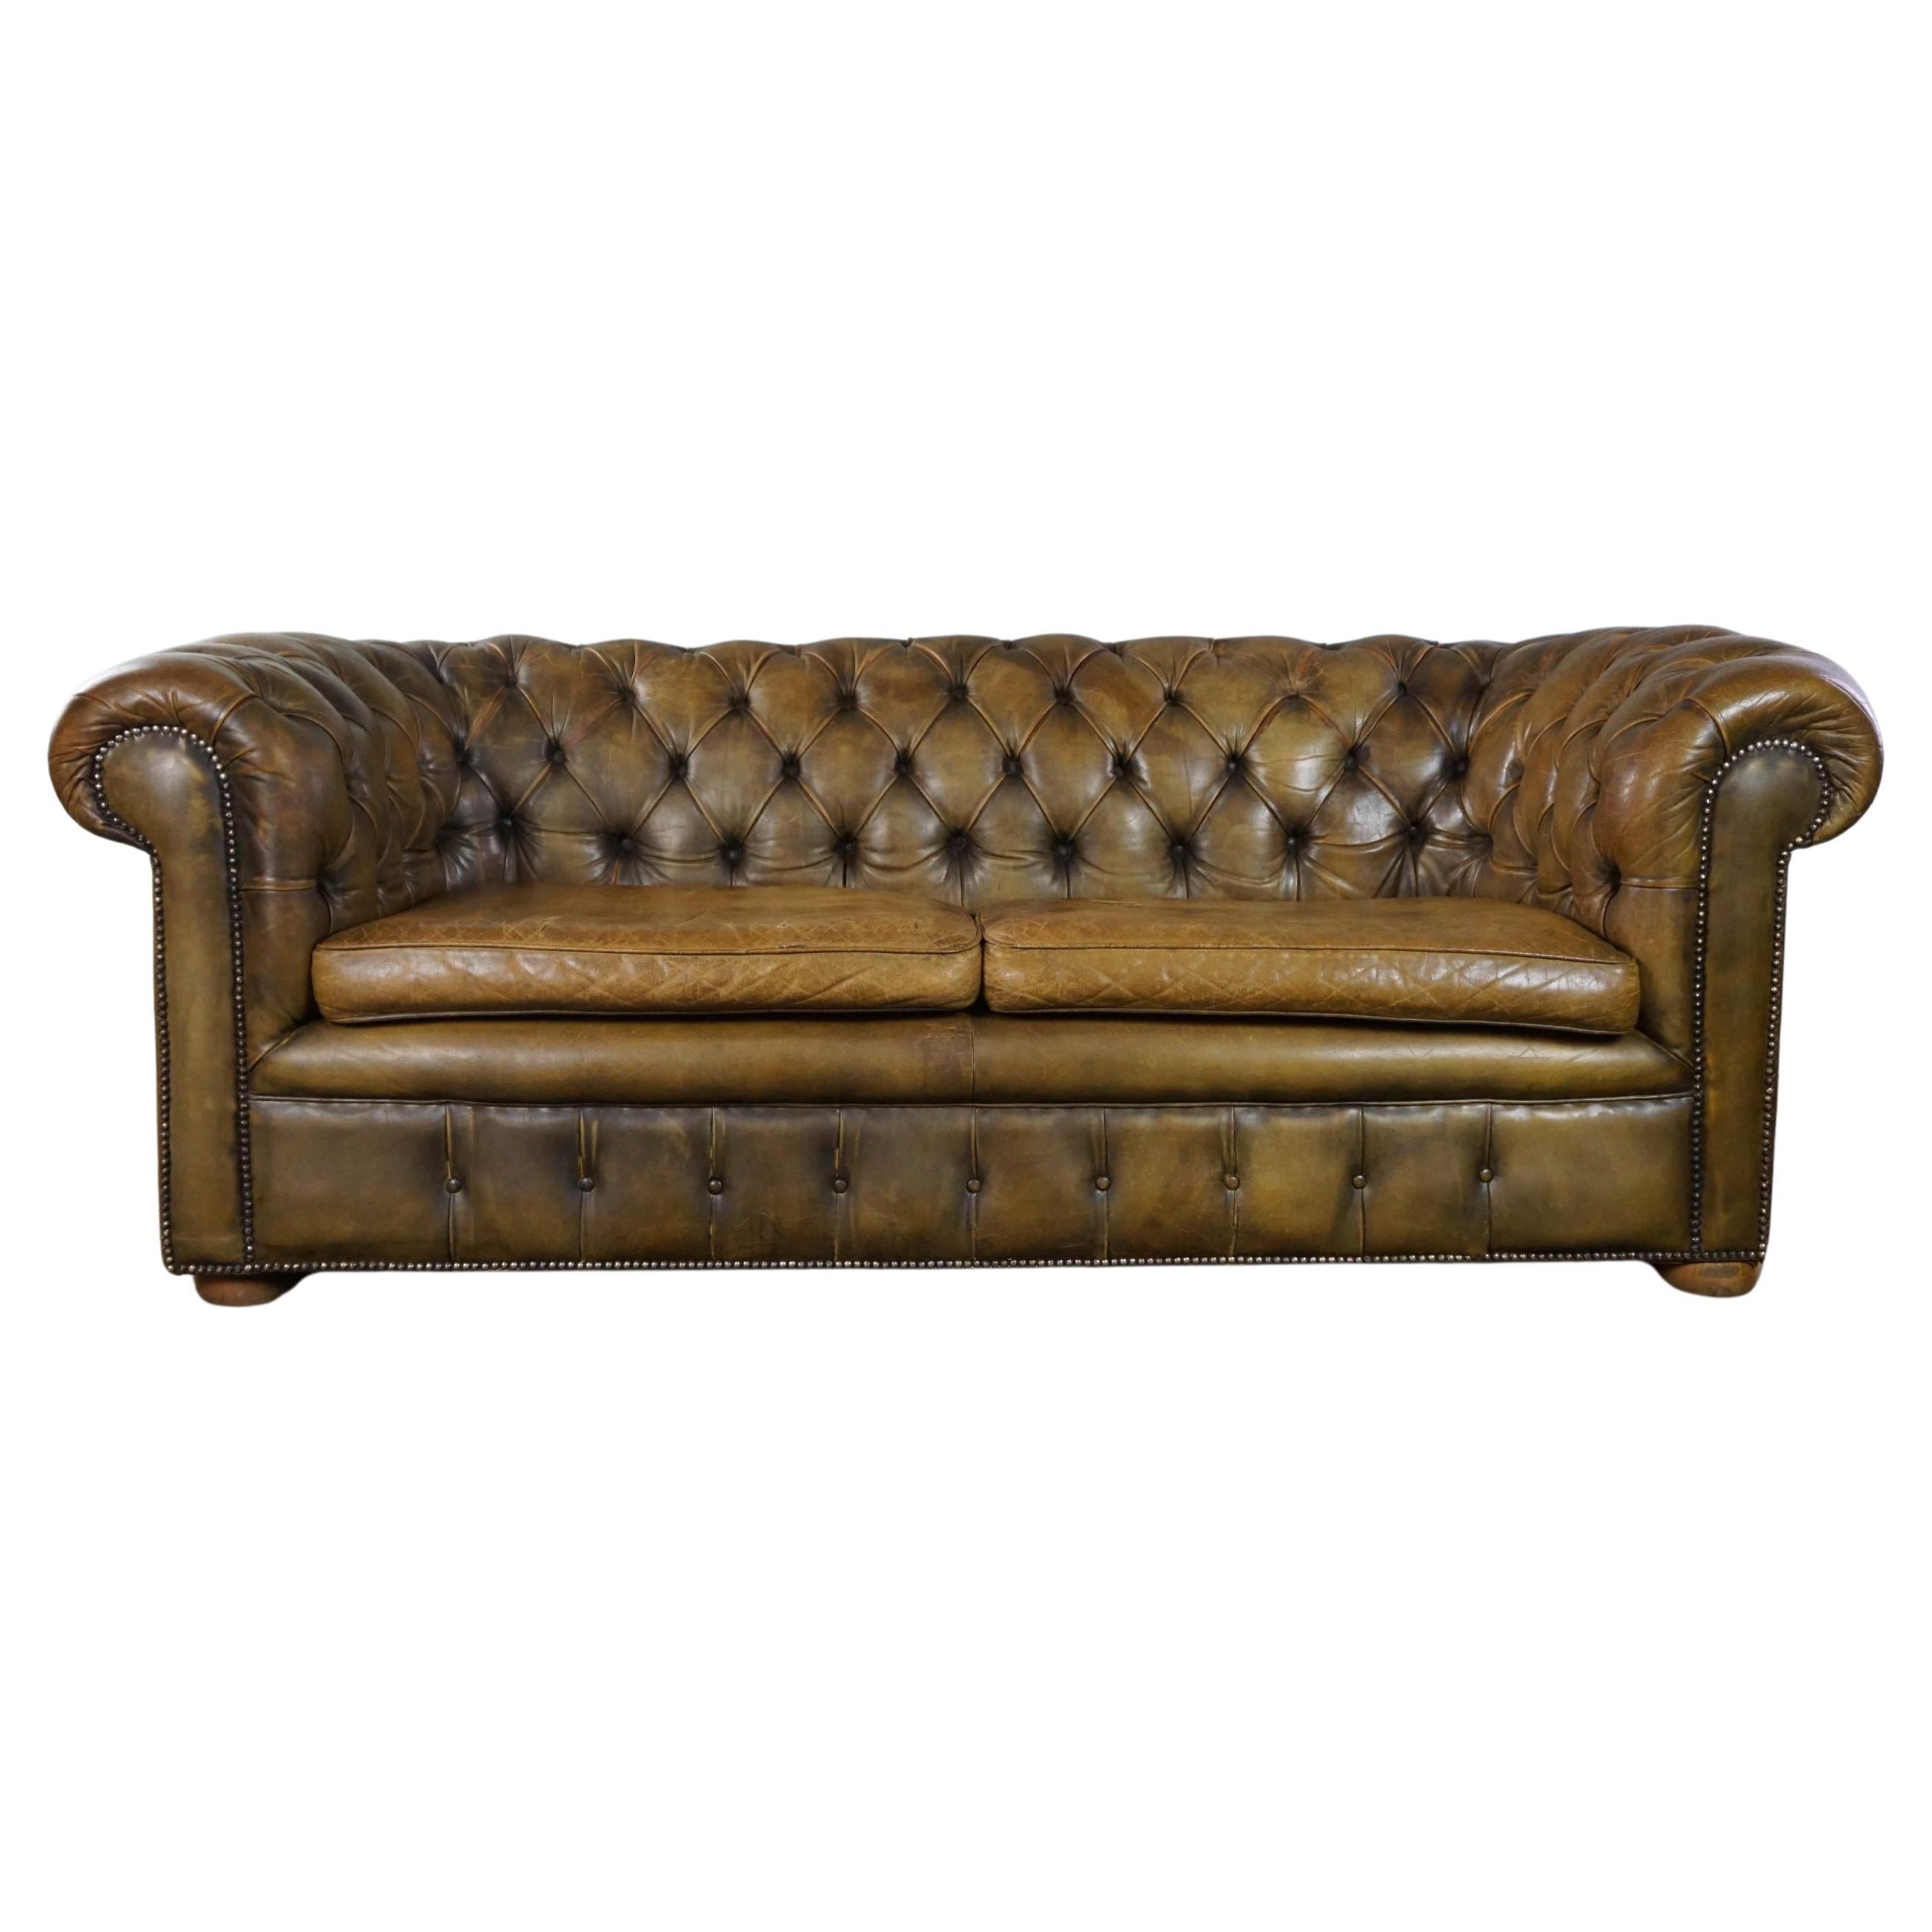 Super robustes 2,5-Sitzer-chesterfield-Sofa in einer schönen Moosgrünen Farbe